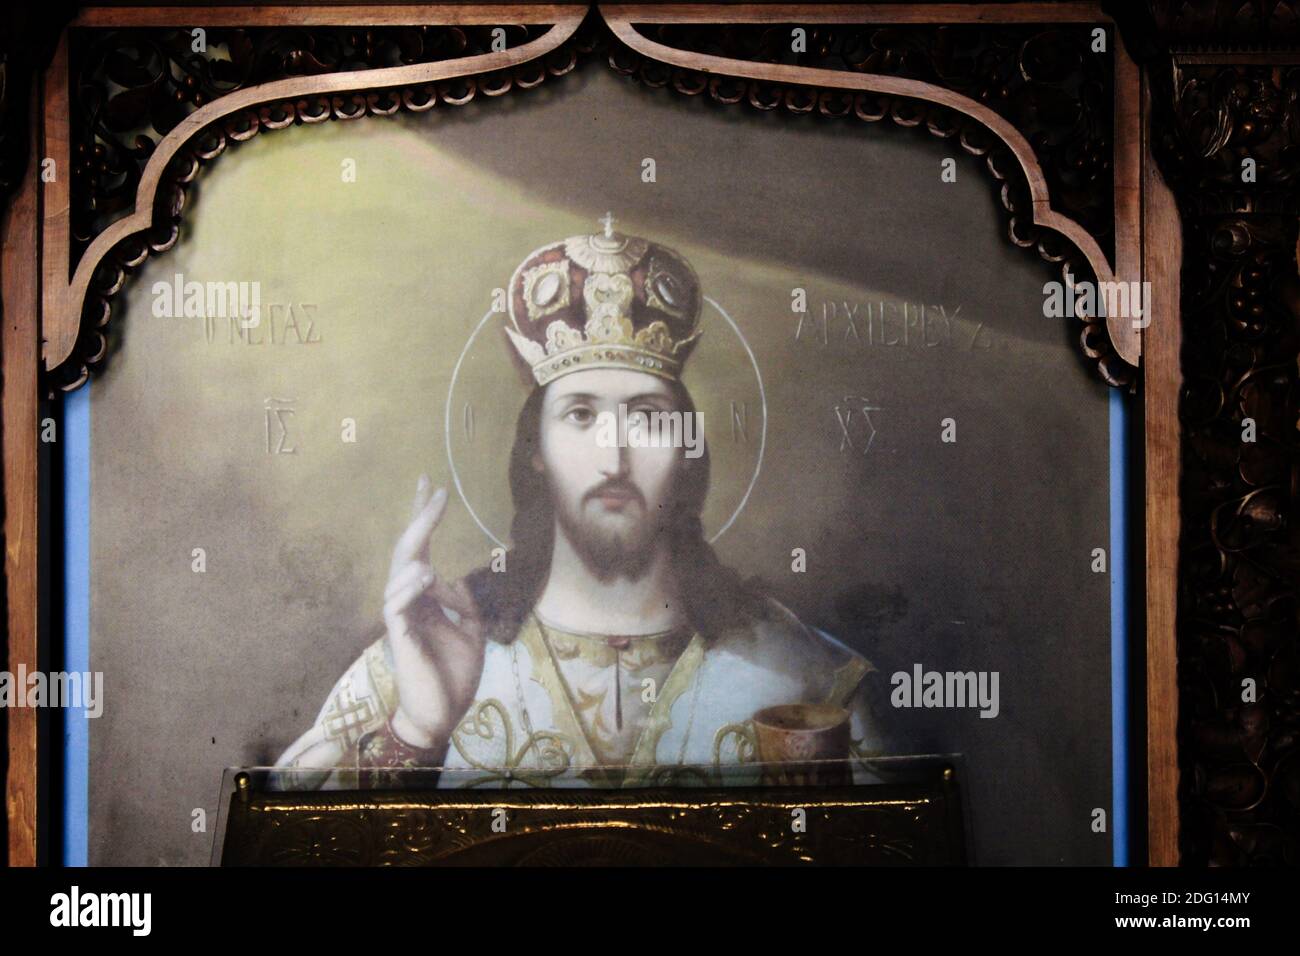 Icona di Gesù Cristo all'interno di una chiesa cristiana ortodossa ad Atene, Grecia - Marzo 12 2020. Foto Stock